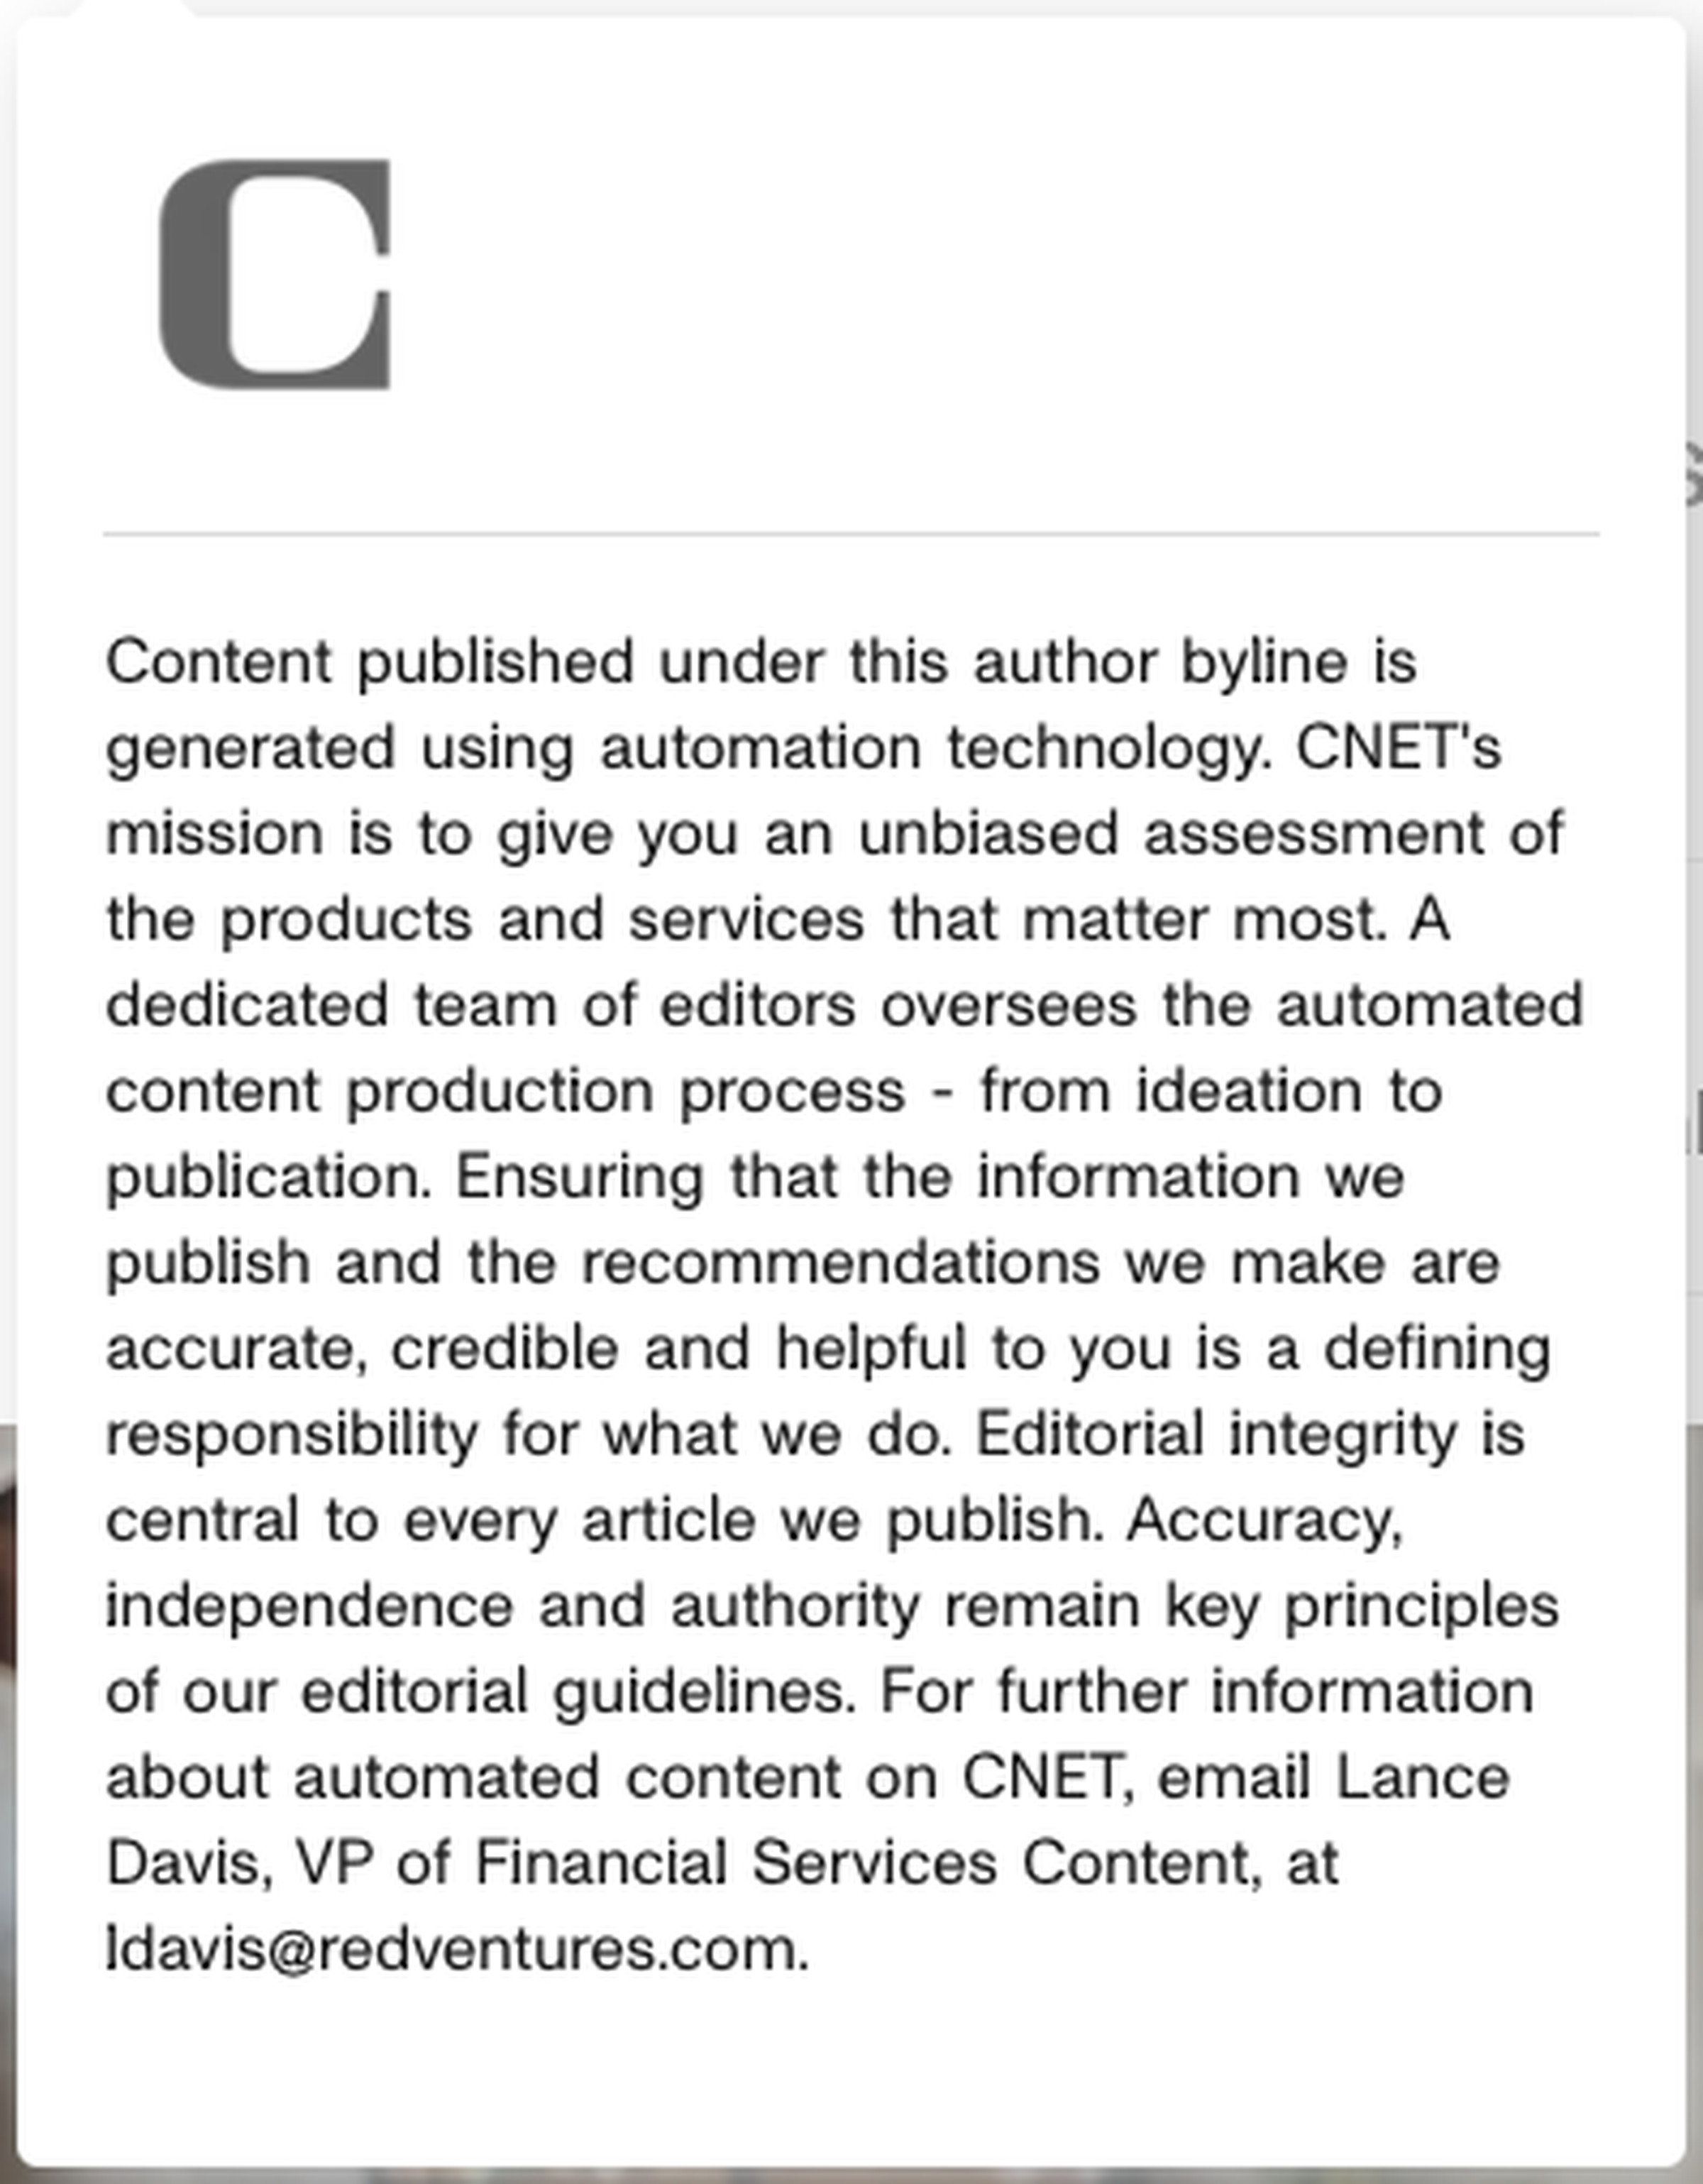 A screenshot of CNET’s AI disclosure.